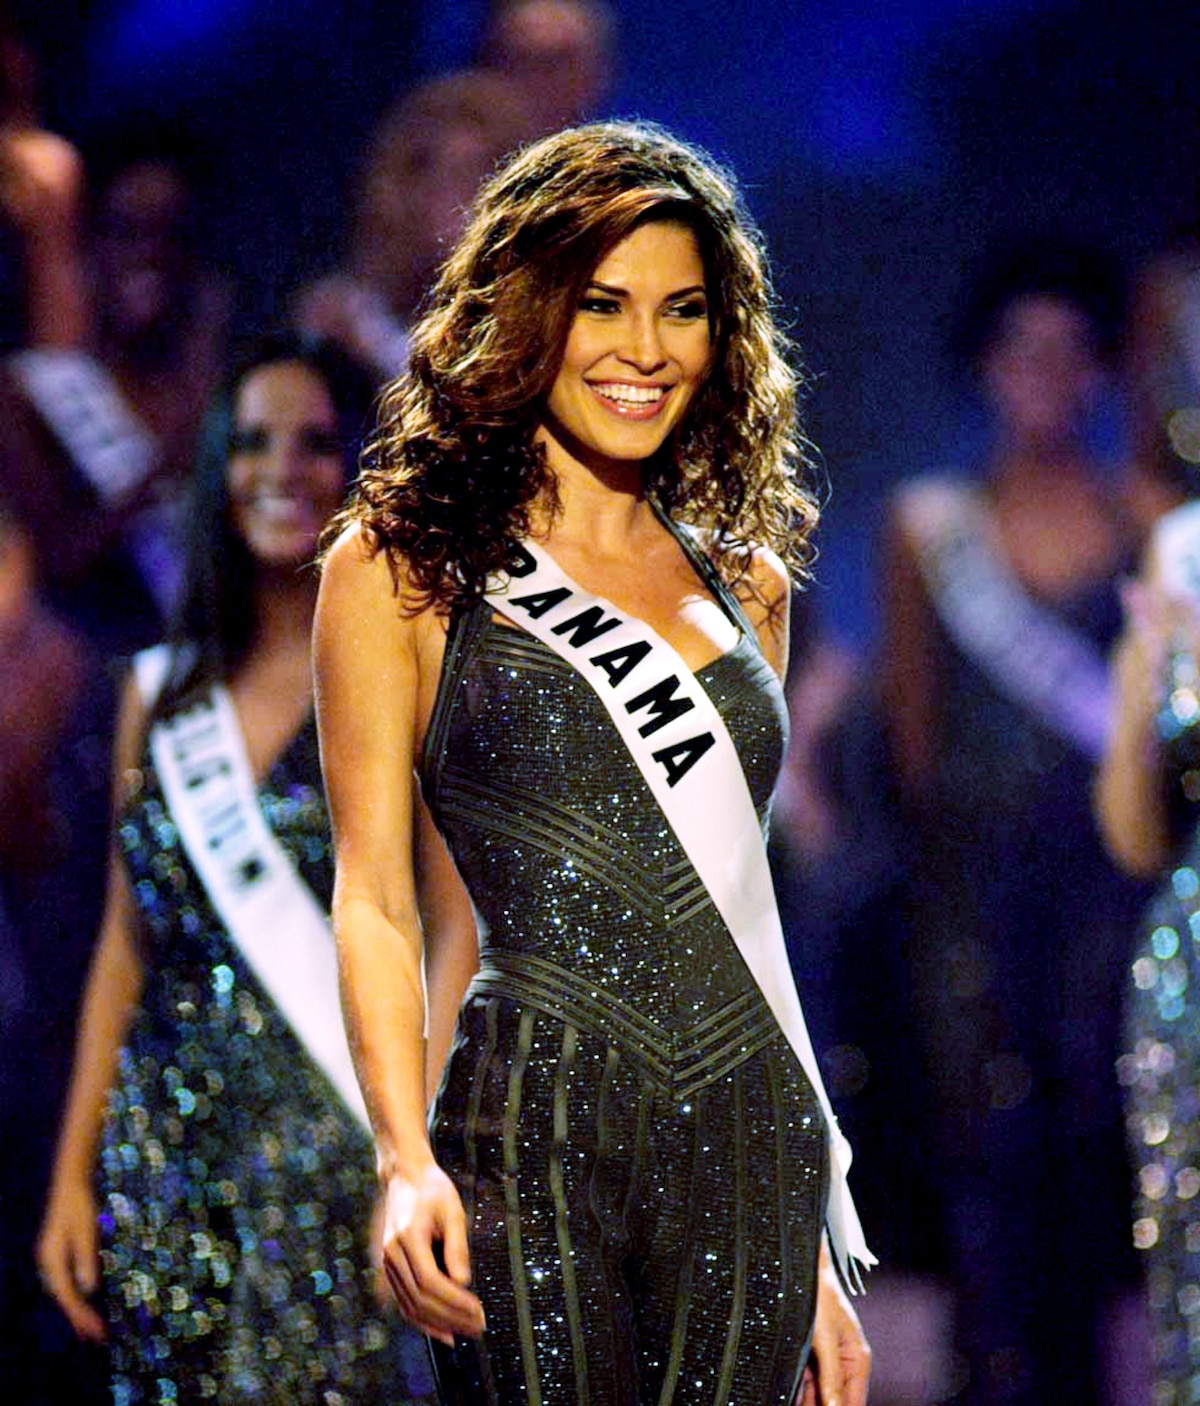 Por siempre reina. Se cumplen 19 años de la coronación de Justine Pasek como Miss Universo 2002